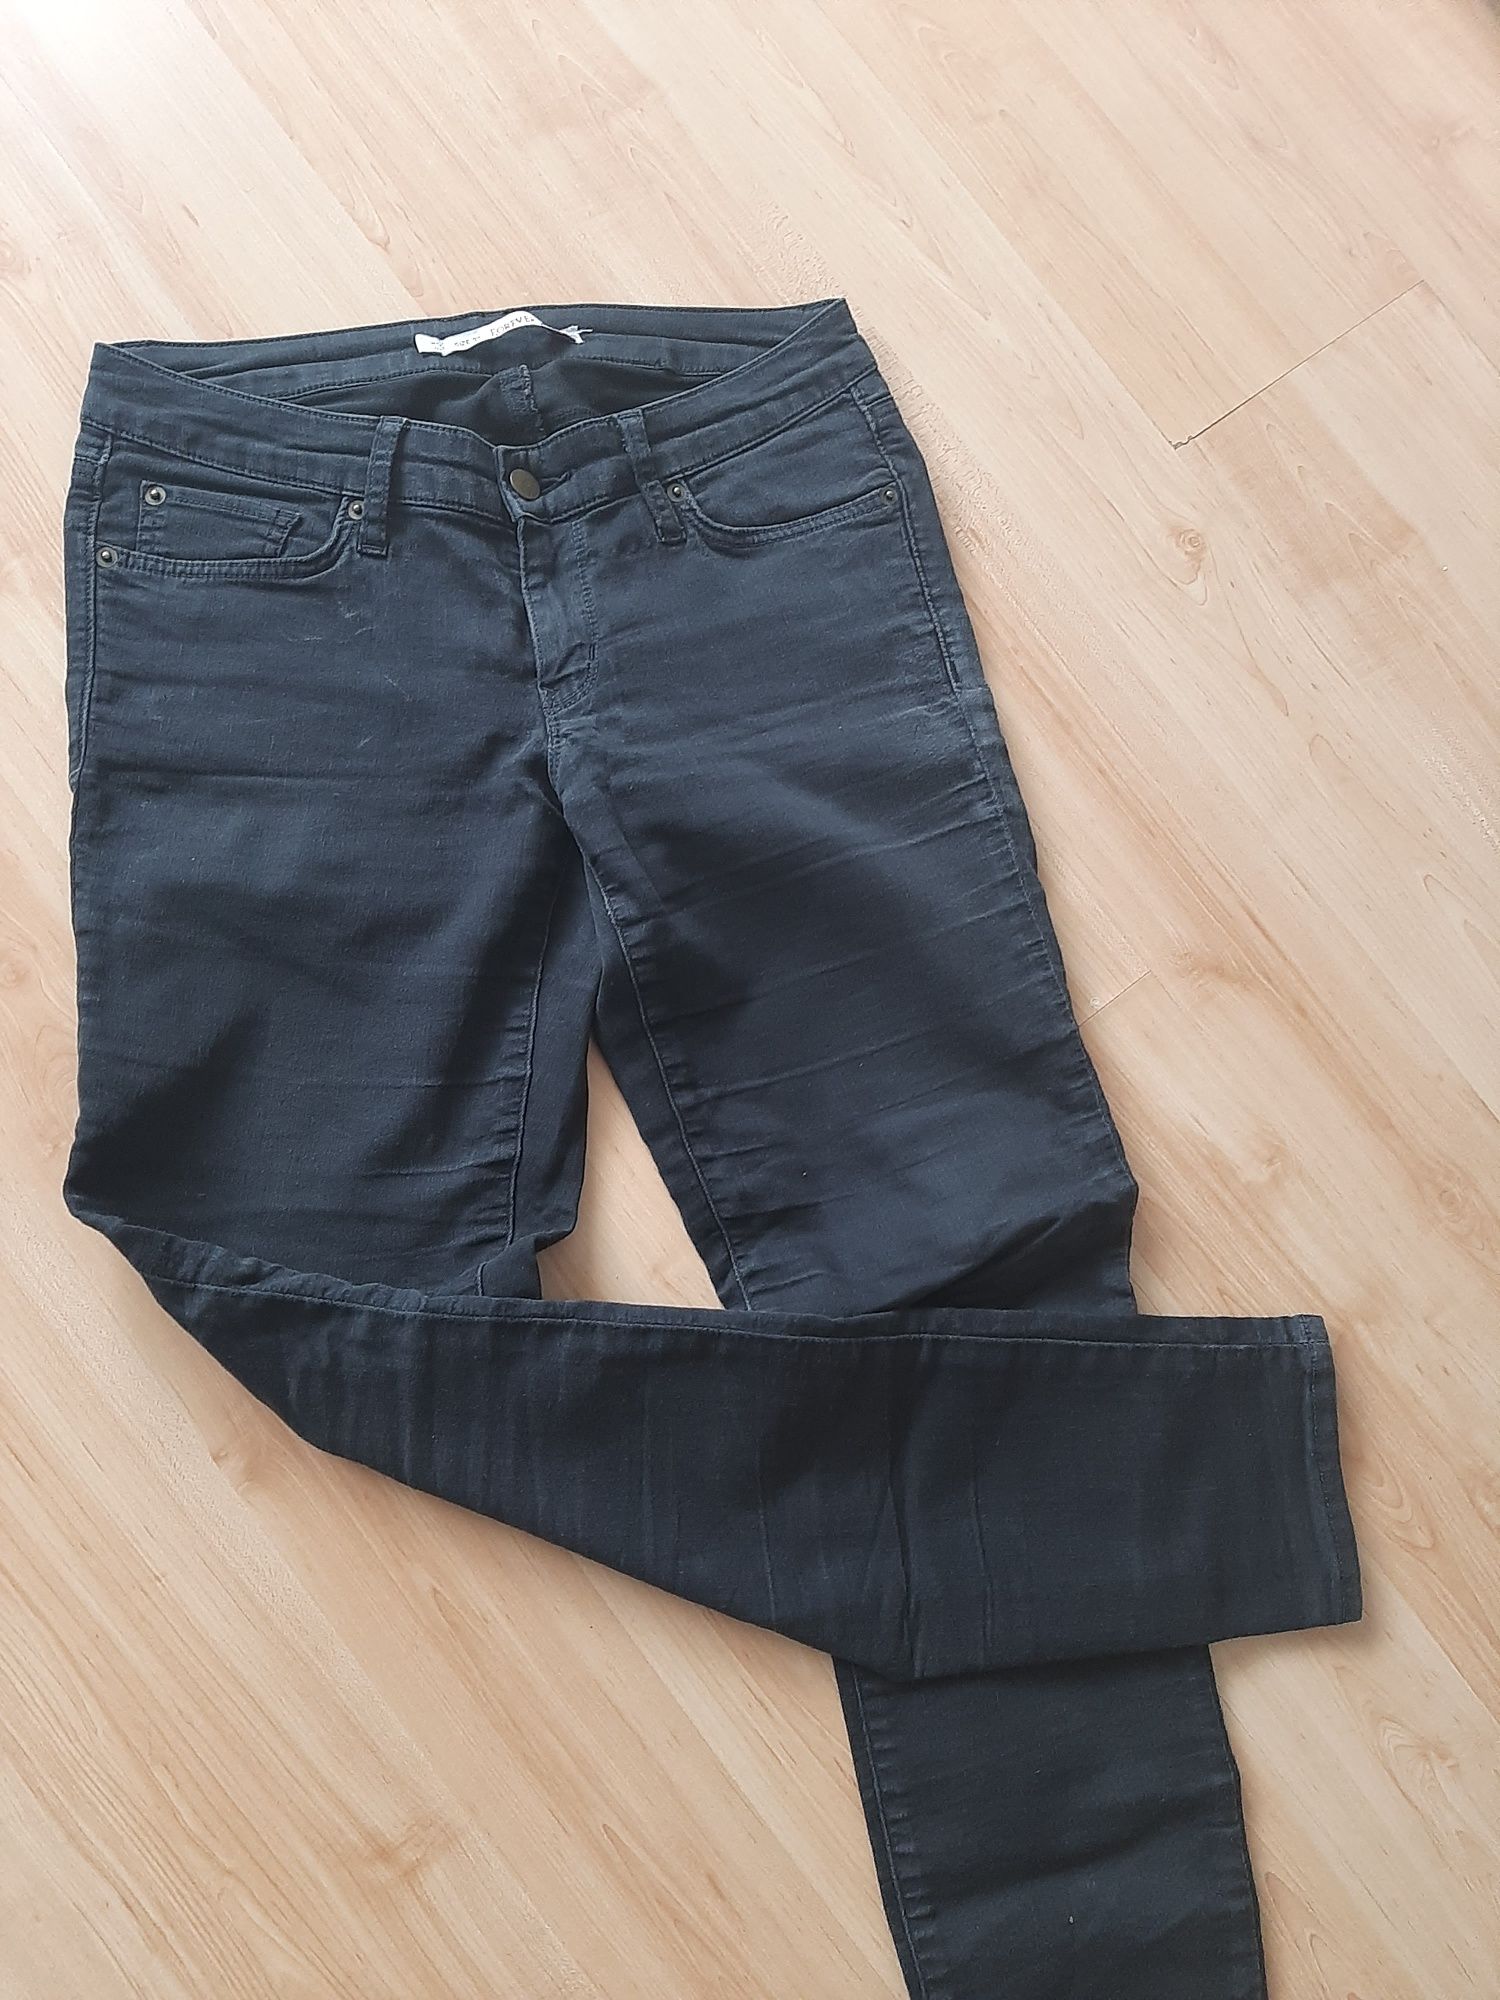 Spodnie damskie jeansowe 30